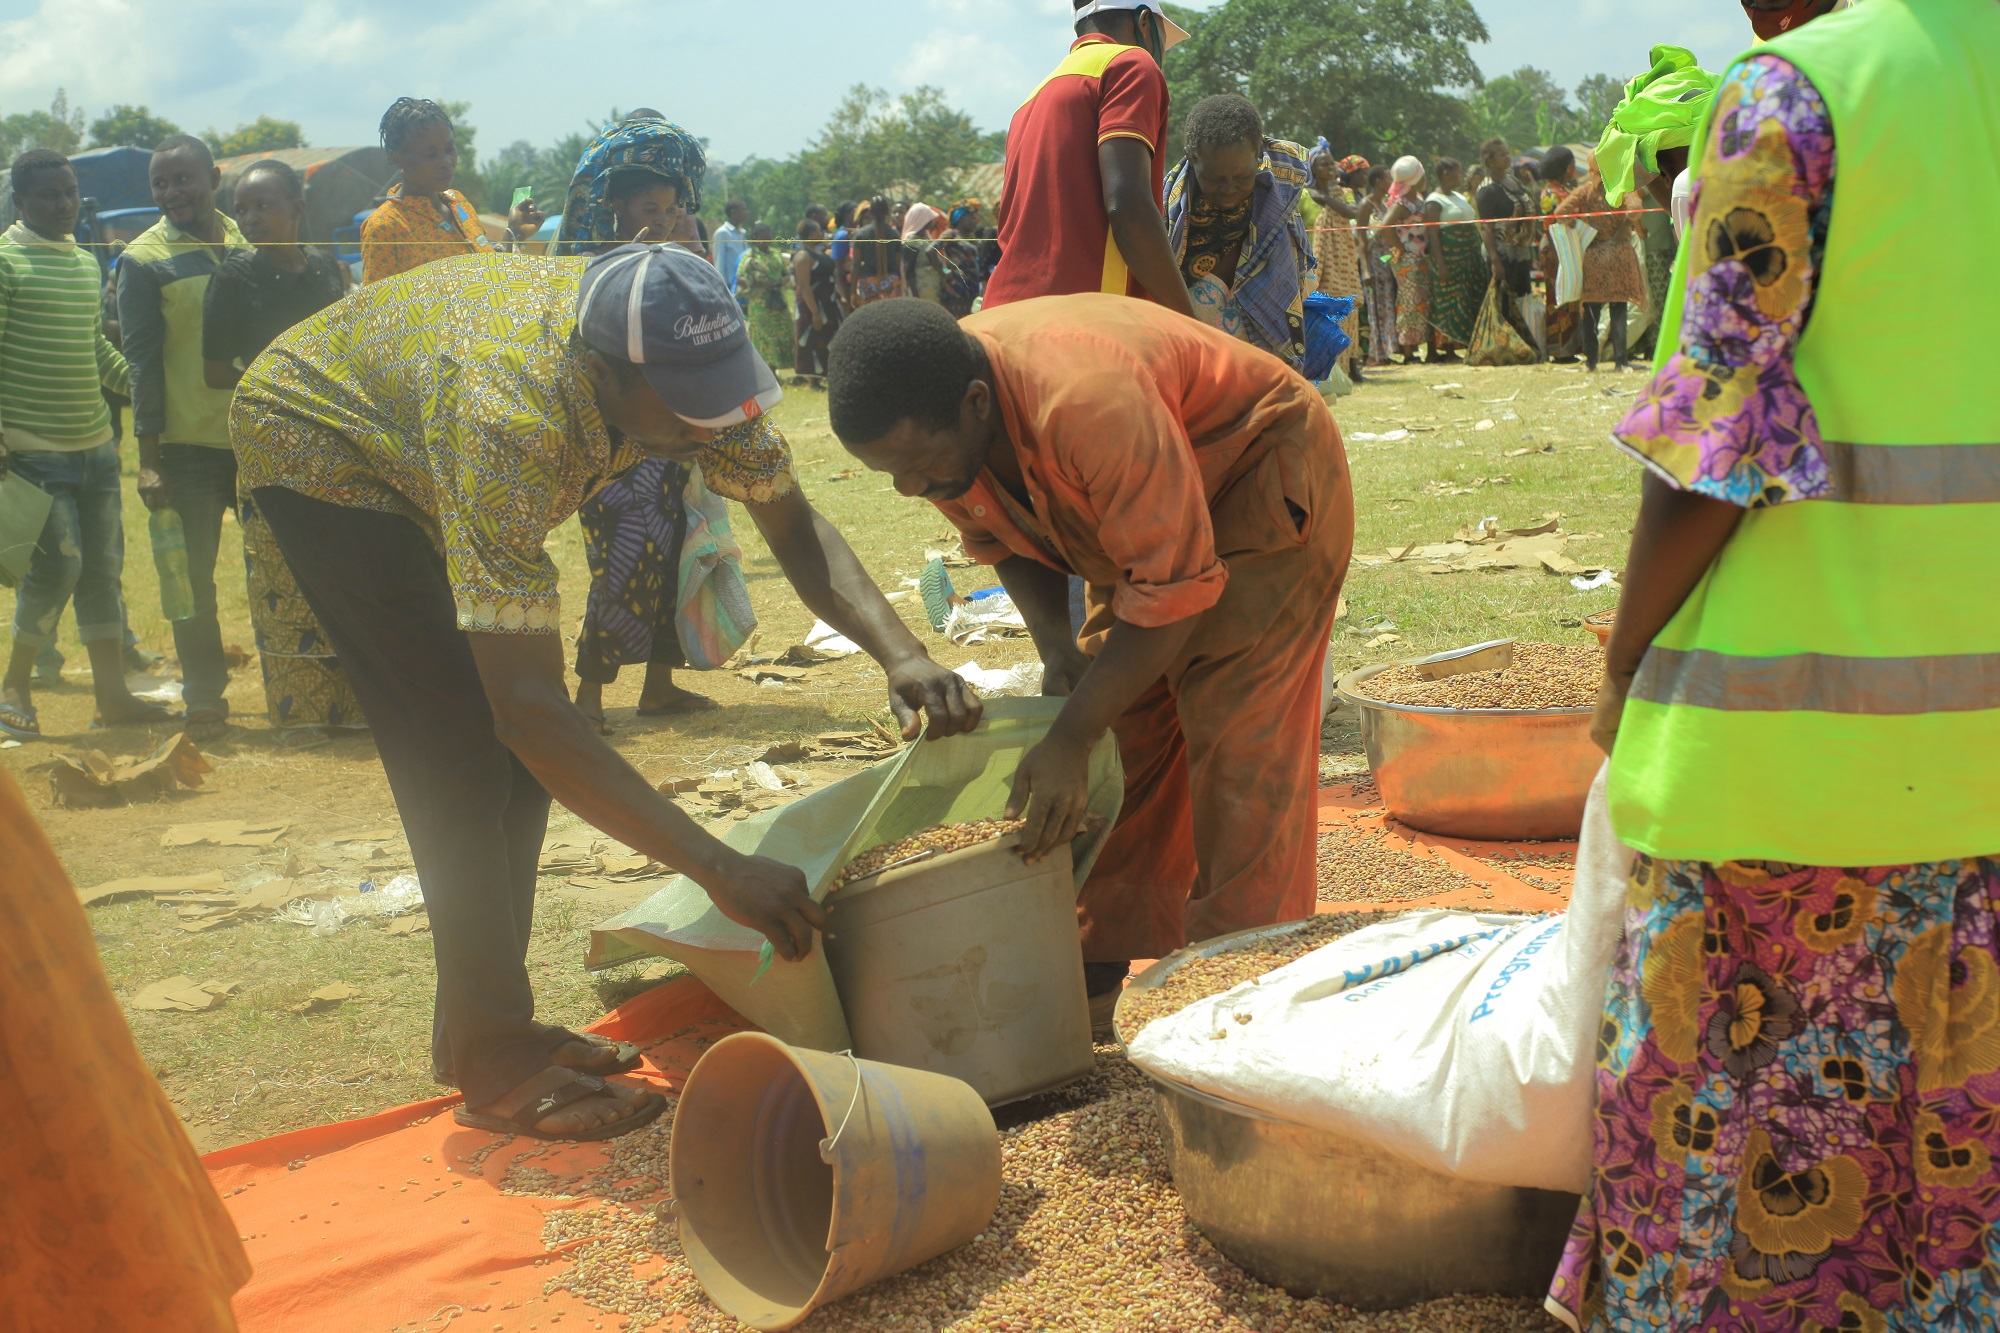 برنامج الأغذية العالمي يقدم مساعدات غذائية للنازحين داخليا في أويتشا بجمهورية الكونغو الديمقراطية.